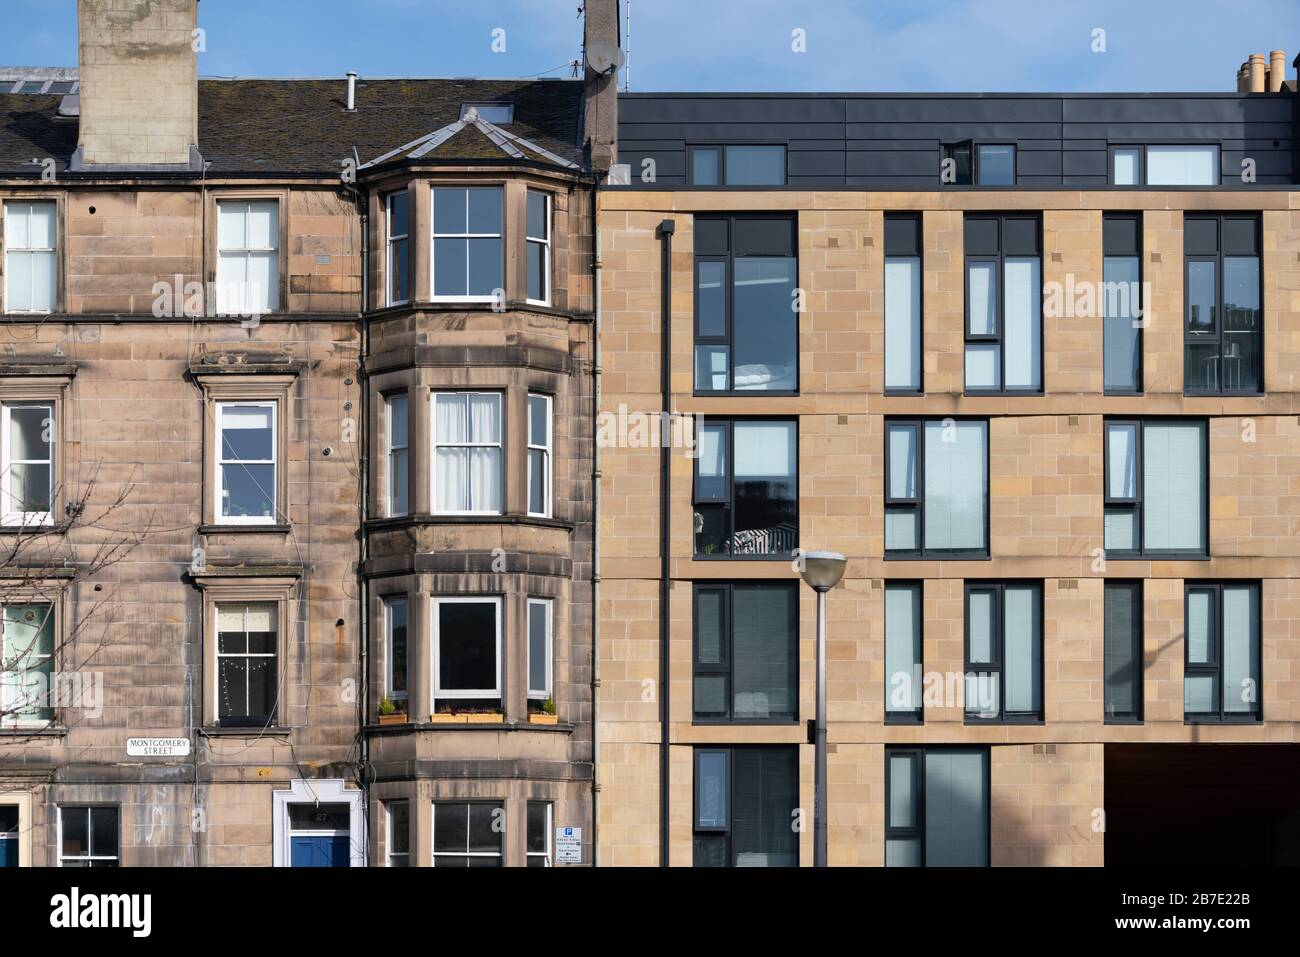 Dettaglio di un moderno edificio di appartamenti adiacente al vecchio edificio in affitto a Edimburgo, Scozia, Regno Unito Foto Stock